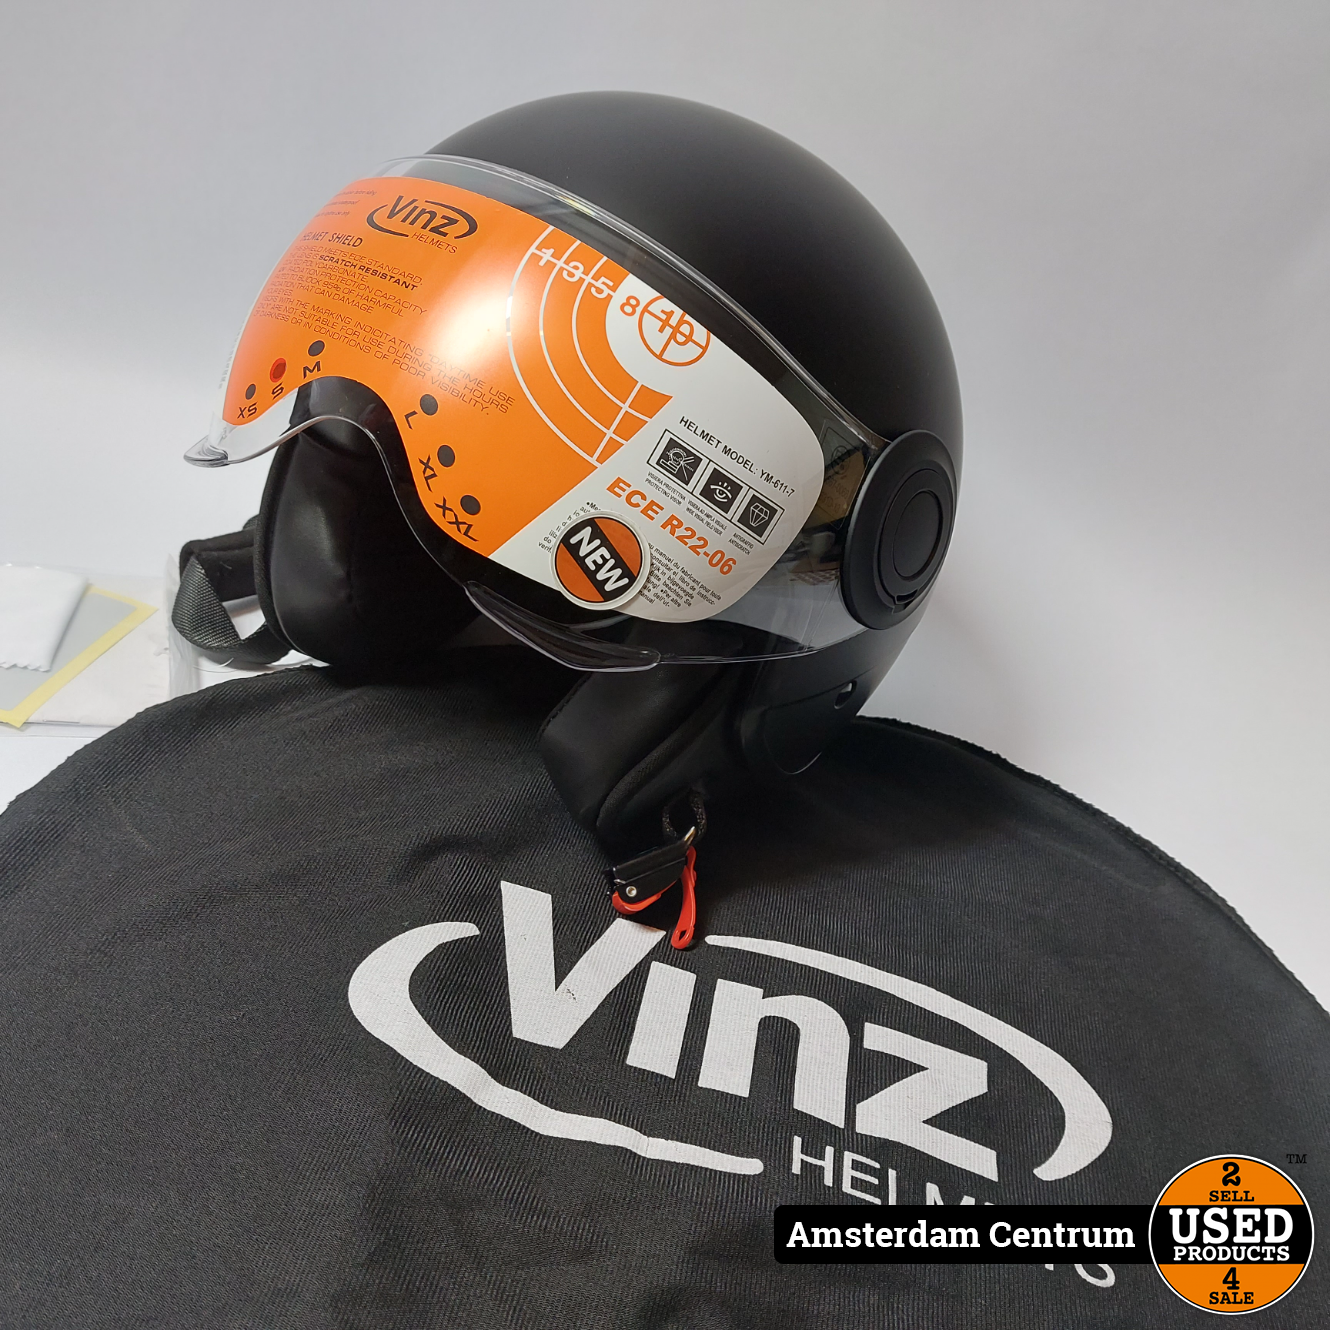 Onderdompeling realiteit doorgaan VINZ Vini Helmet YM 611 7 - Nieuw - Used Products Amsterdam Centrum